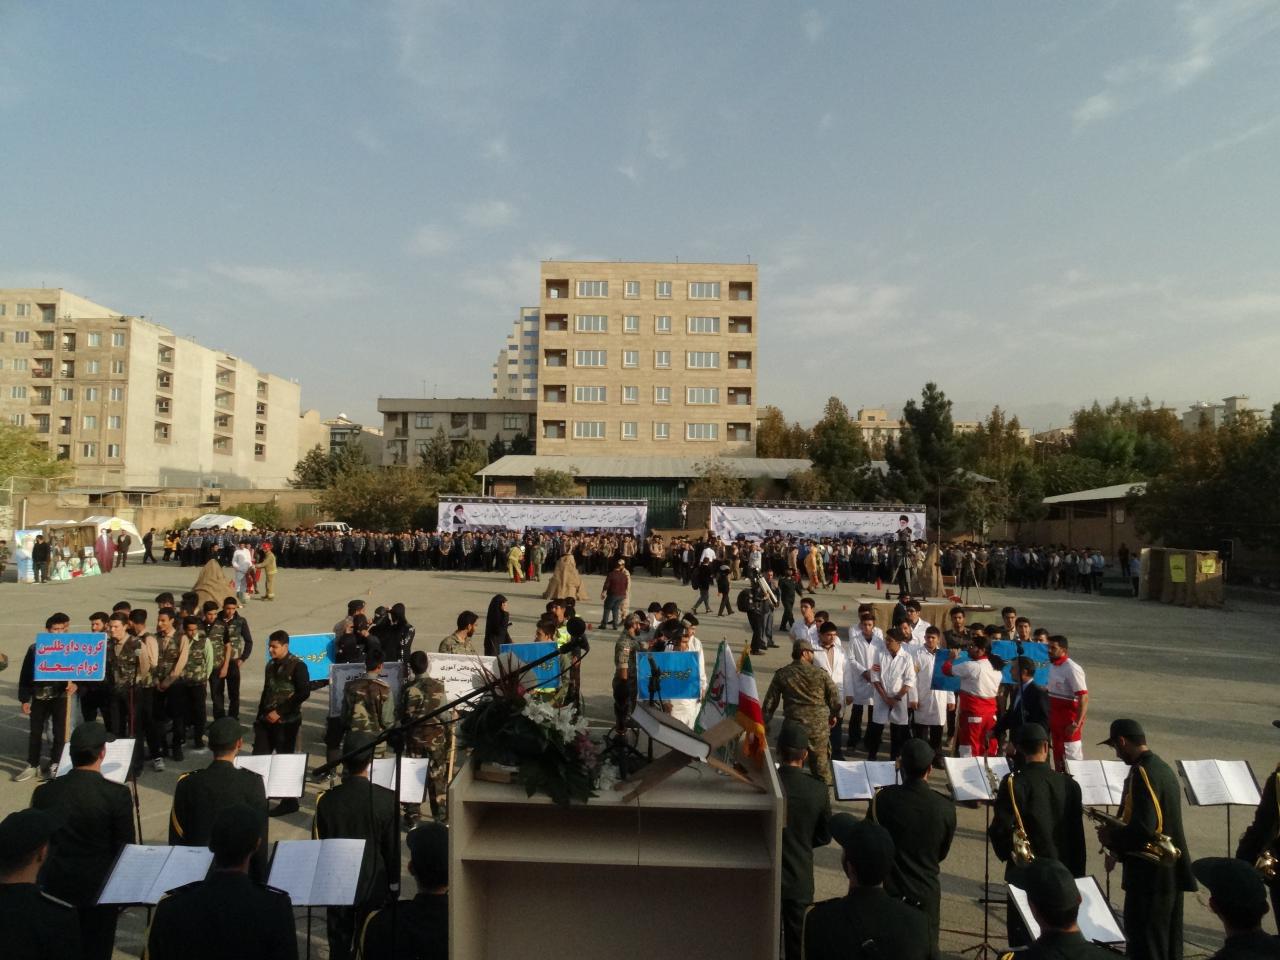 رزمایش و صبحگاه مشترک دانش آموزی هفته پدافند غیرعامل در هنرستان پیام تهران رسما آغاز شد